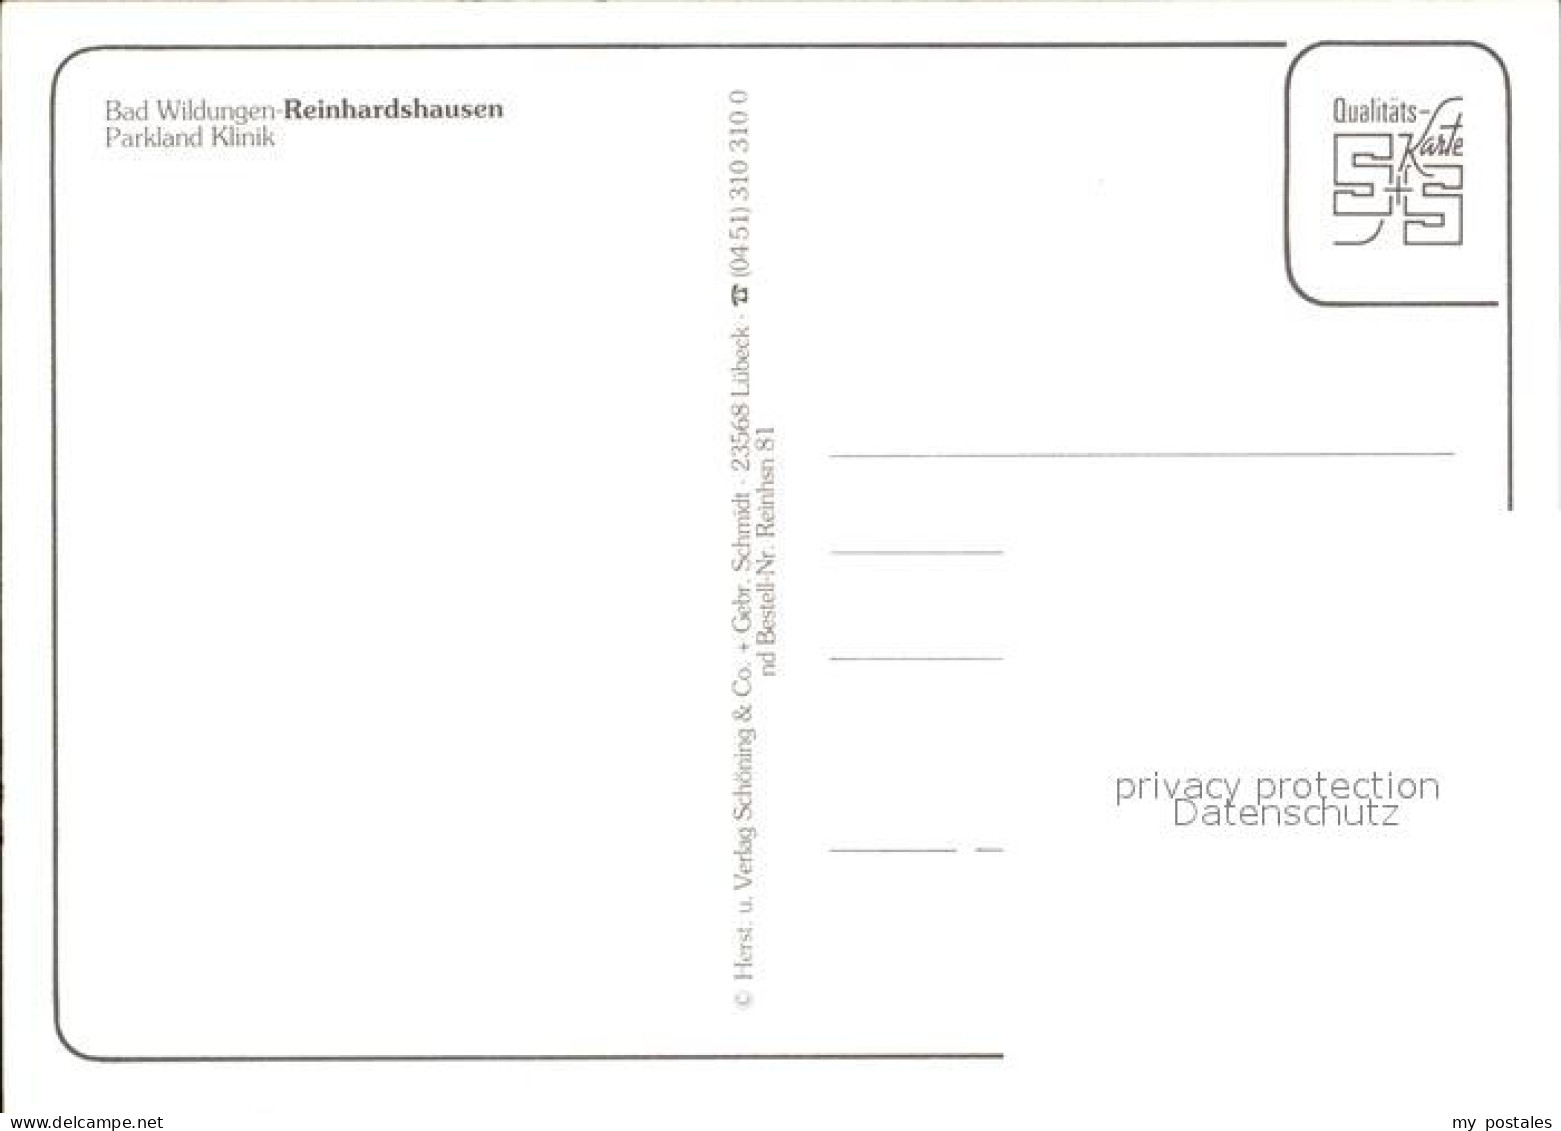 72488688 Reinhardshausen Parkland Klinik Albertshausen - Bad Wildungen